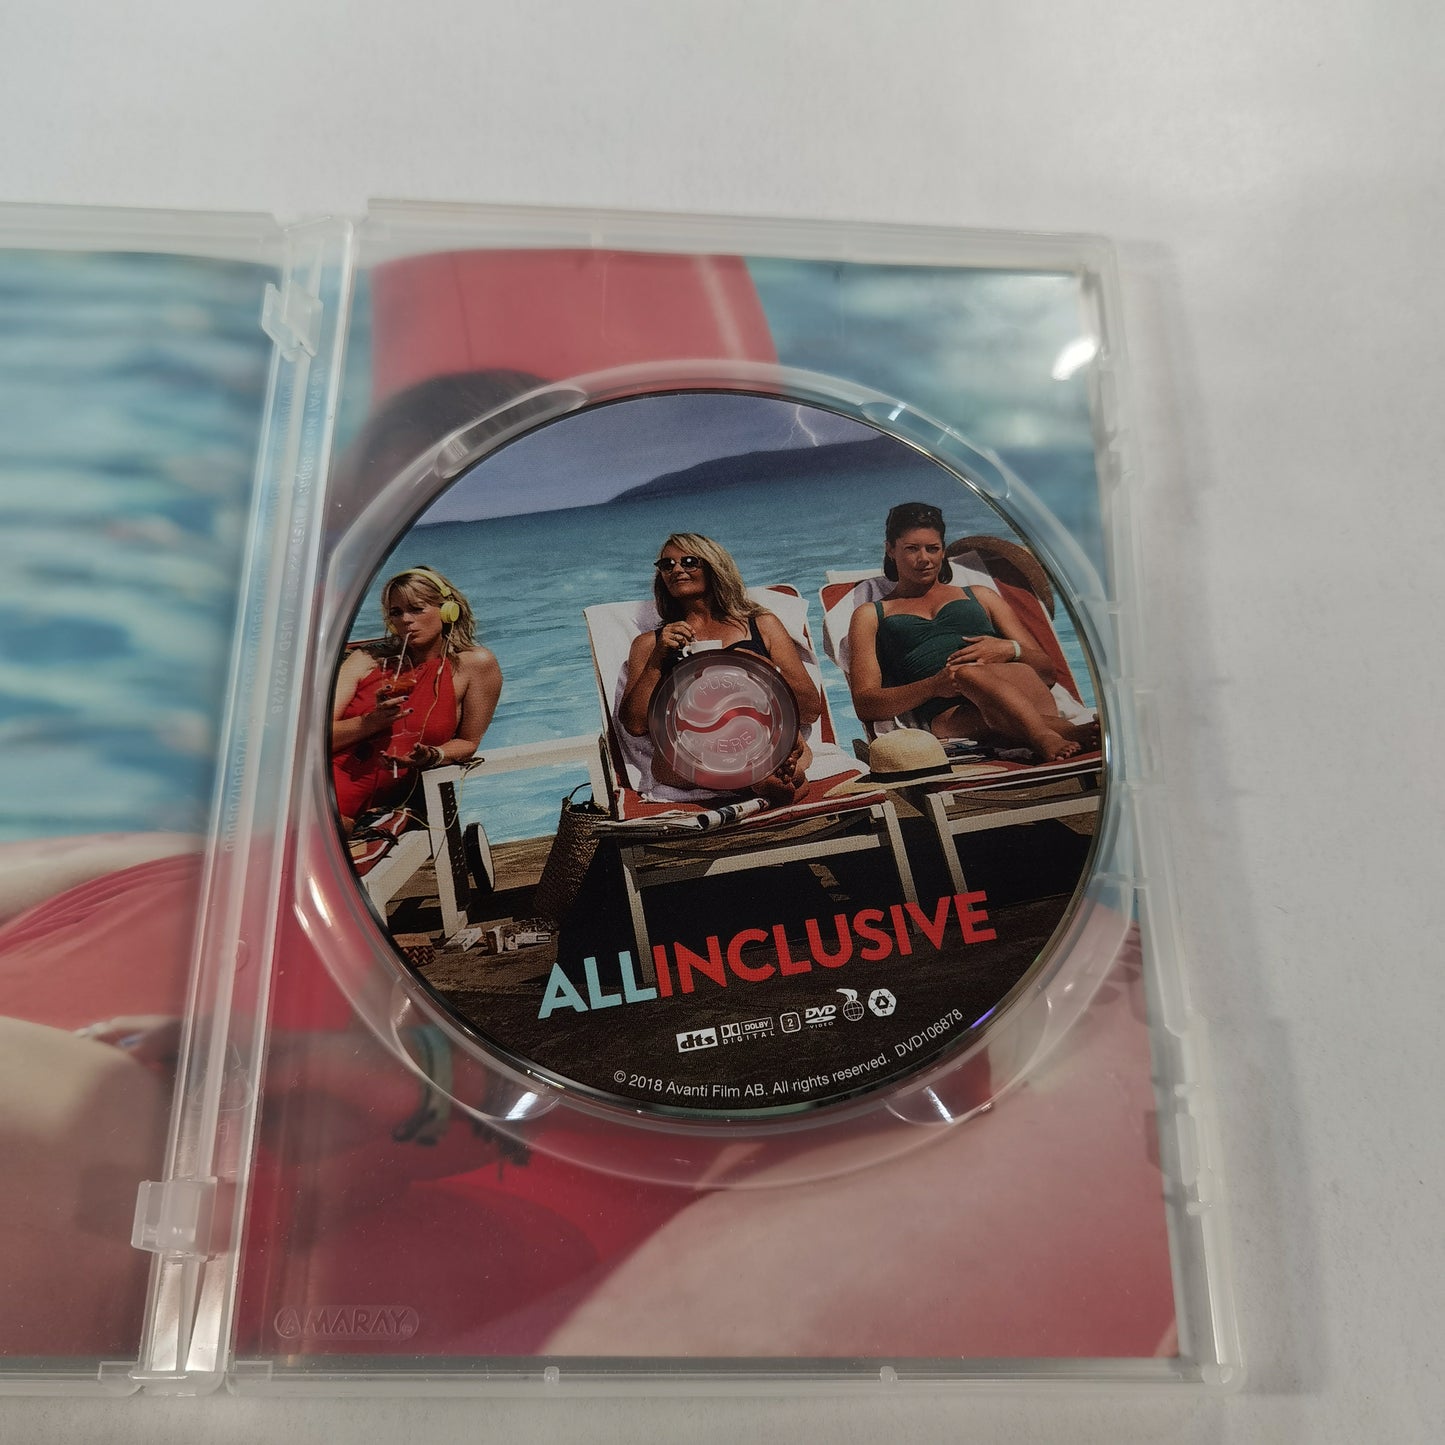 All Inclusive (2017) - DVD SE 2018